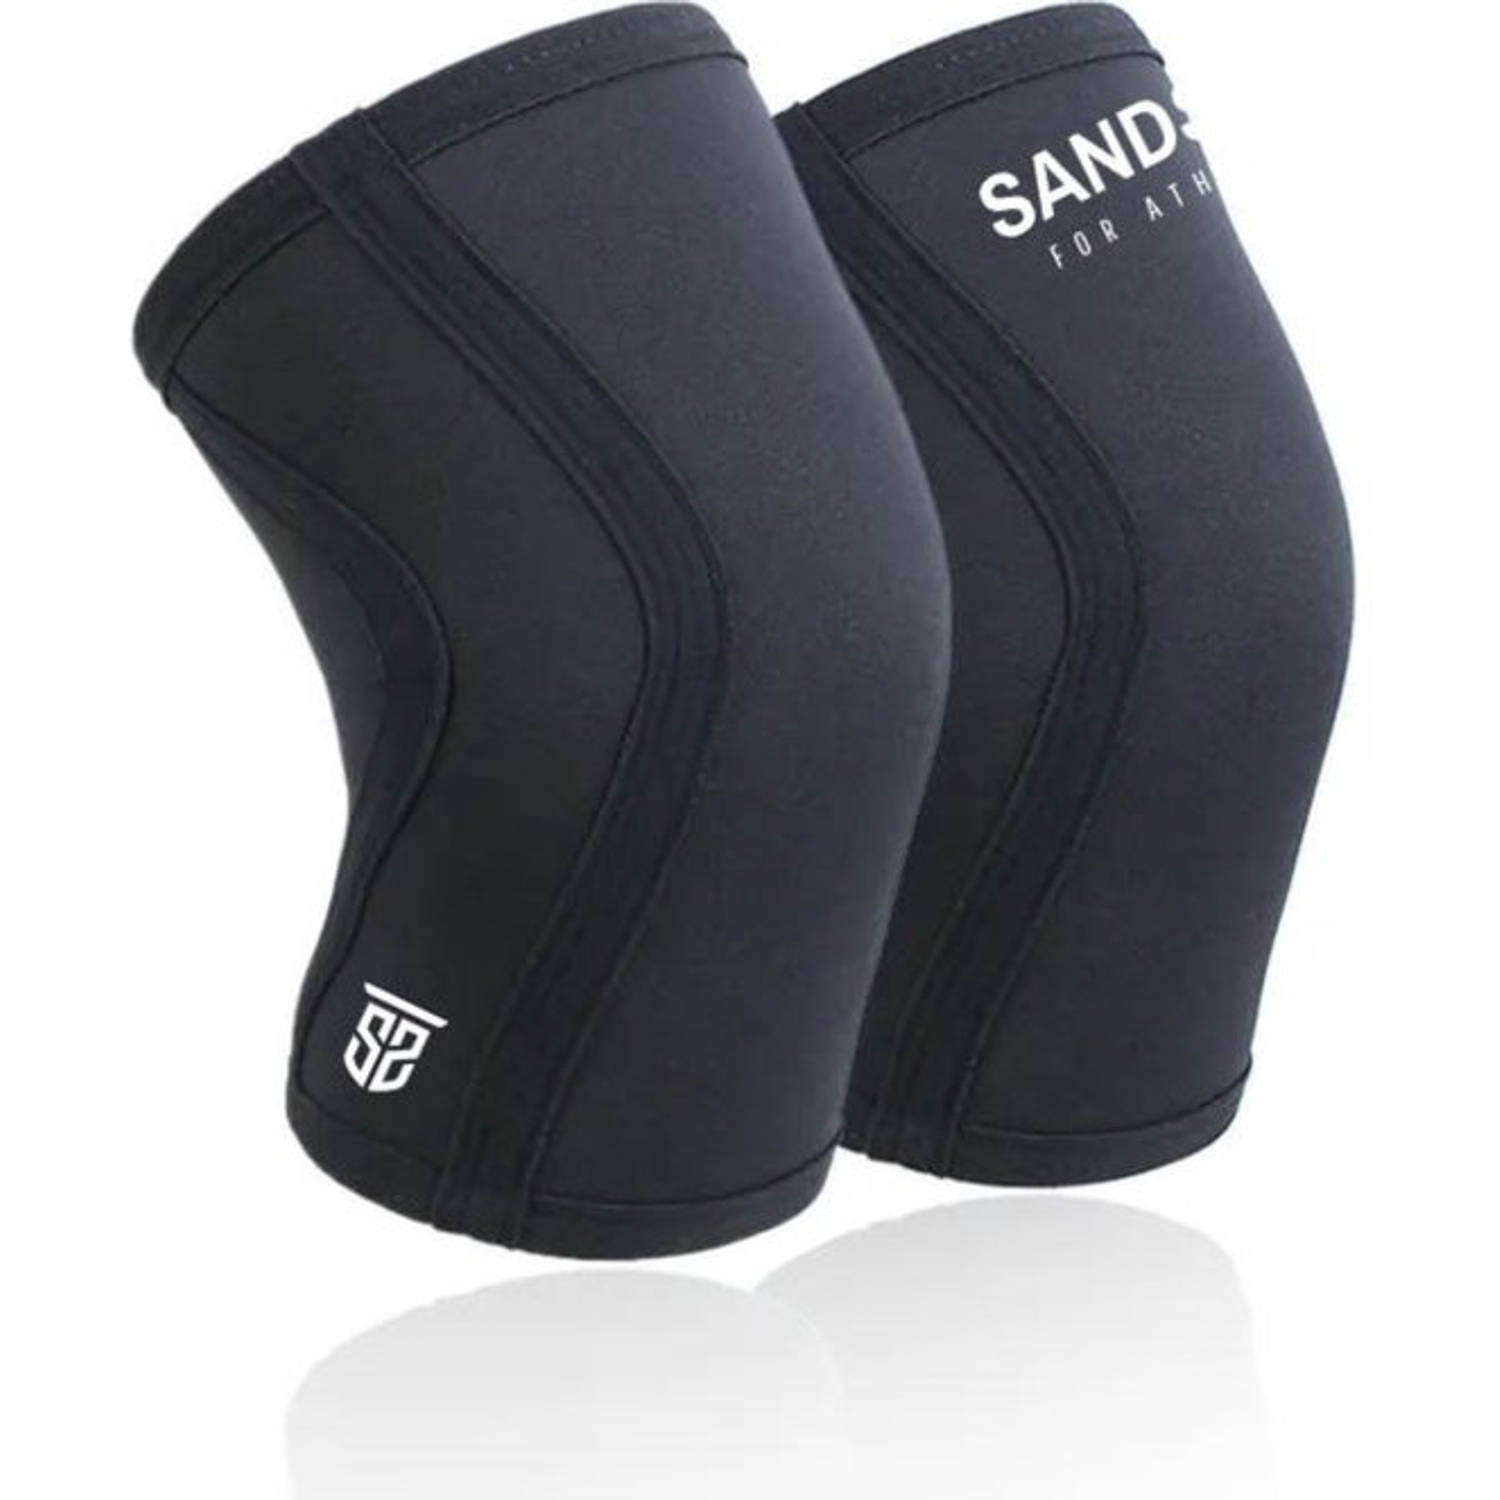 Sandside Knee Sleeves Powerlifting - 7 MM Neopreen Zwart - Knee Sleeve Crossfit - Knieband - Maat L